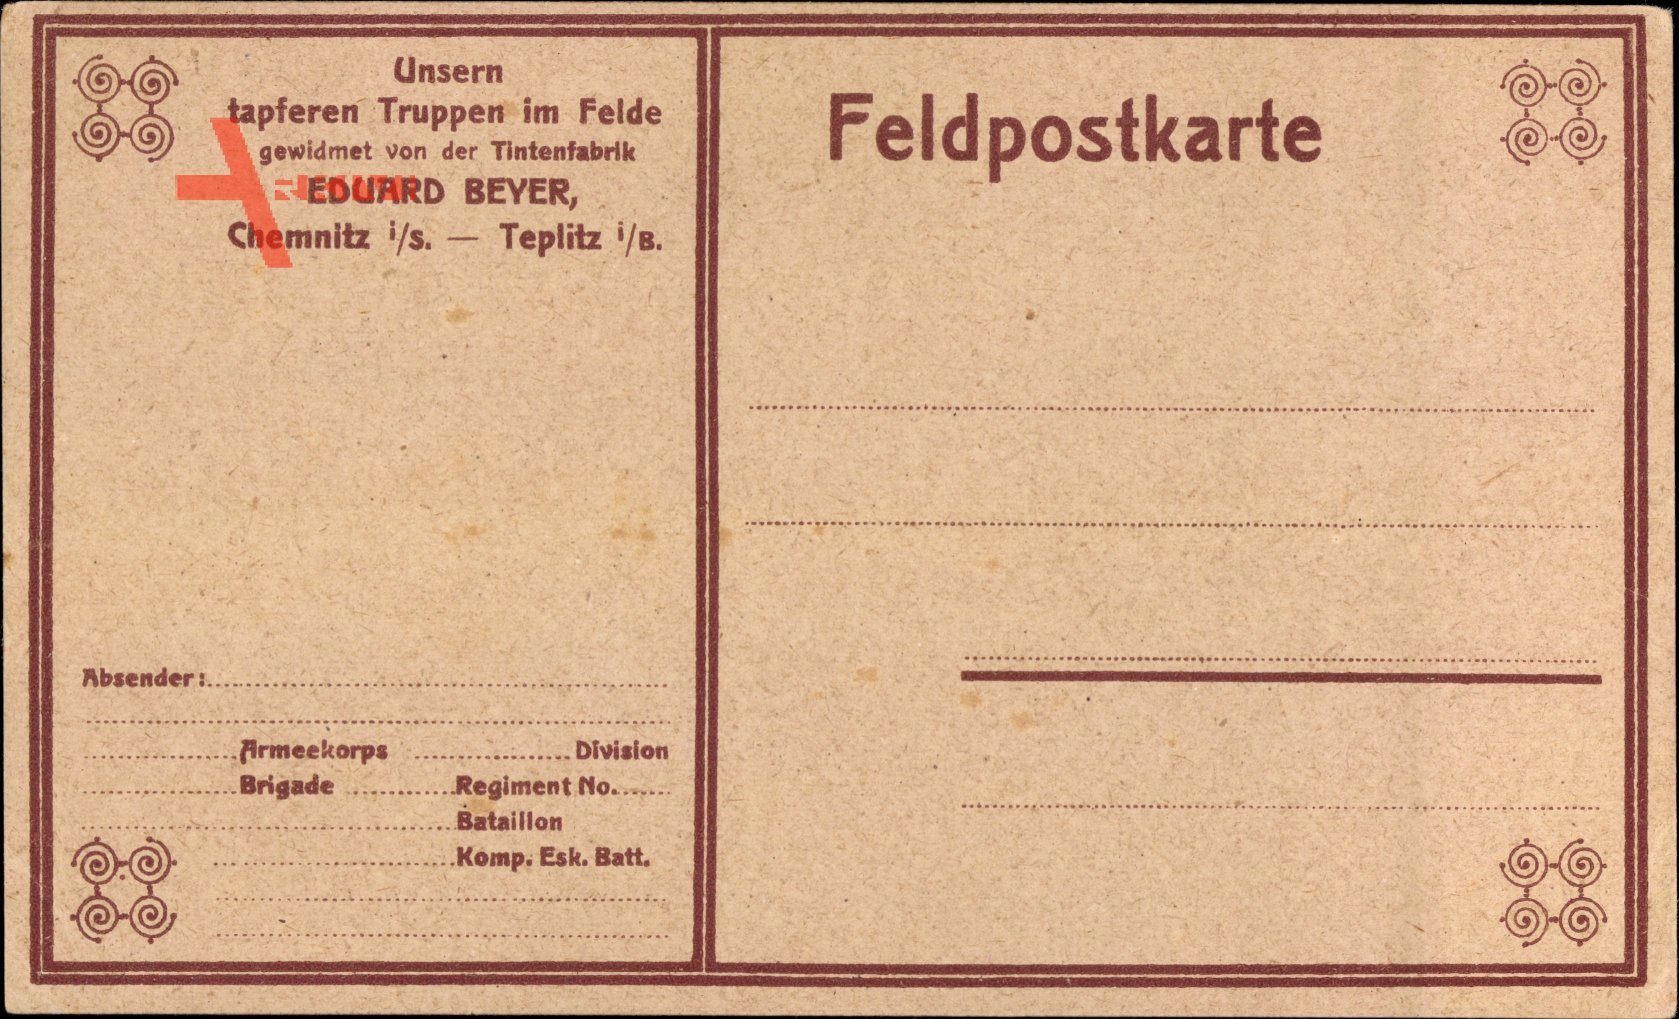 Feldpost Unsern tapferen Truppen im Felde,Tintenfabrik Eduard Beyer, Chemnitz